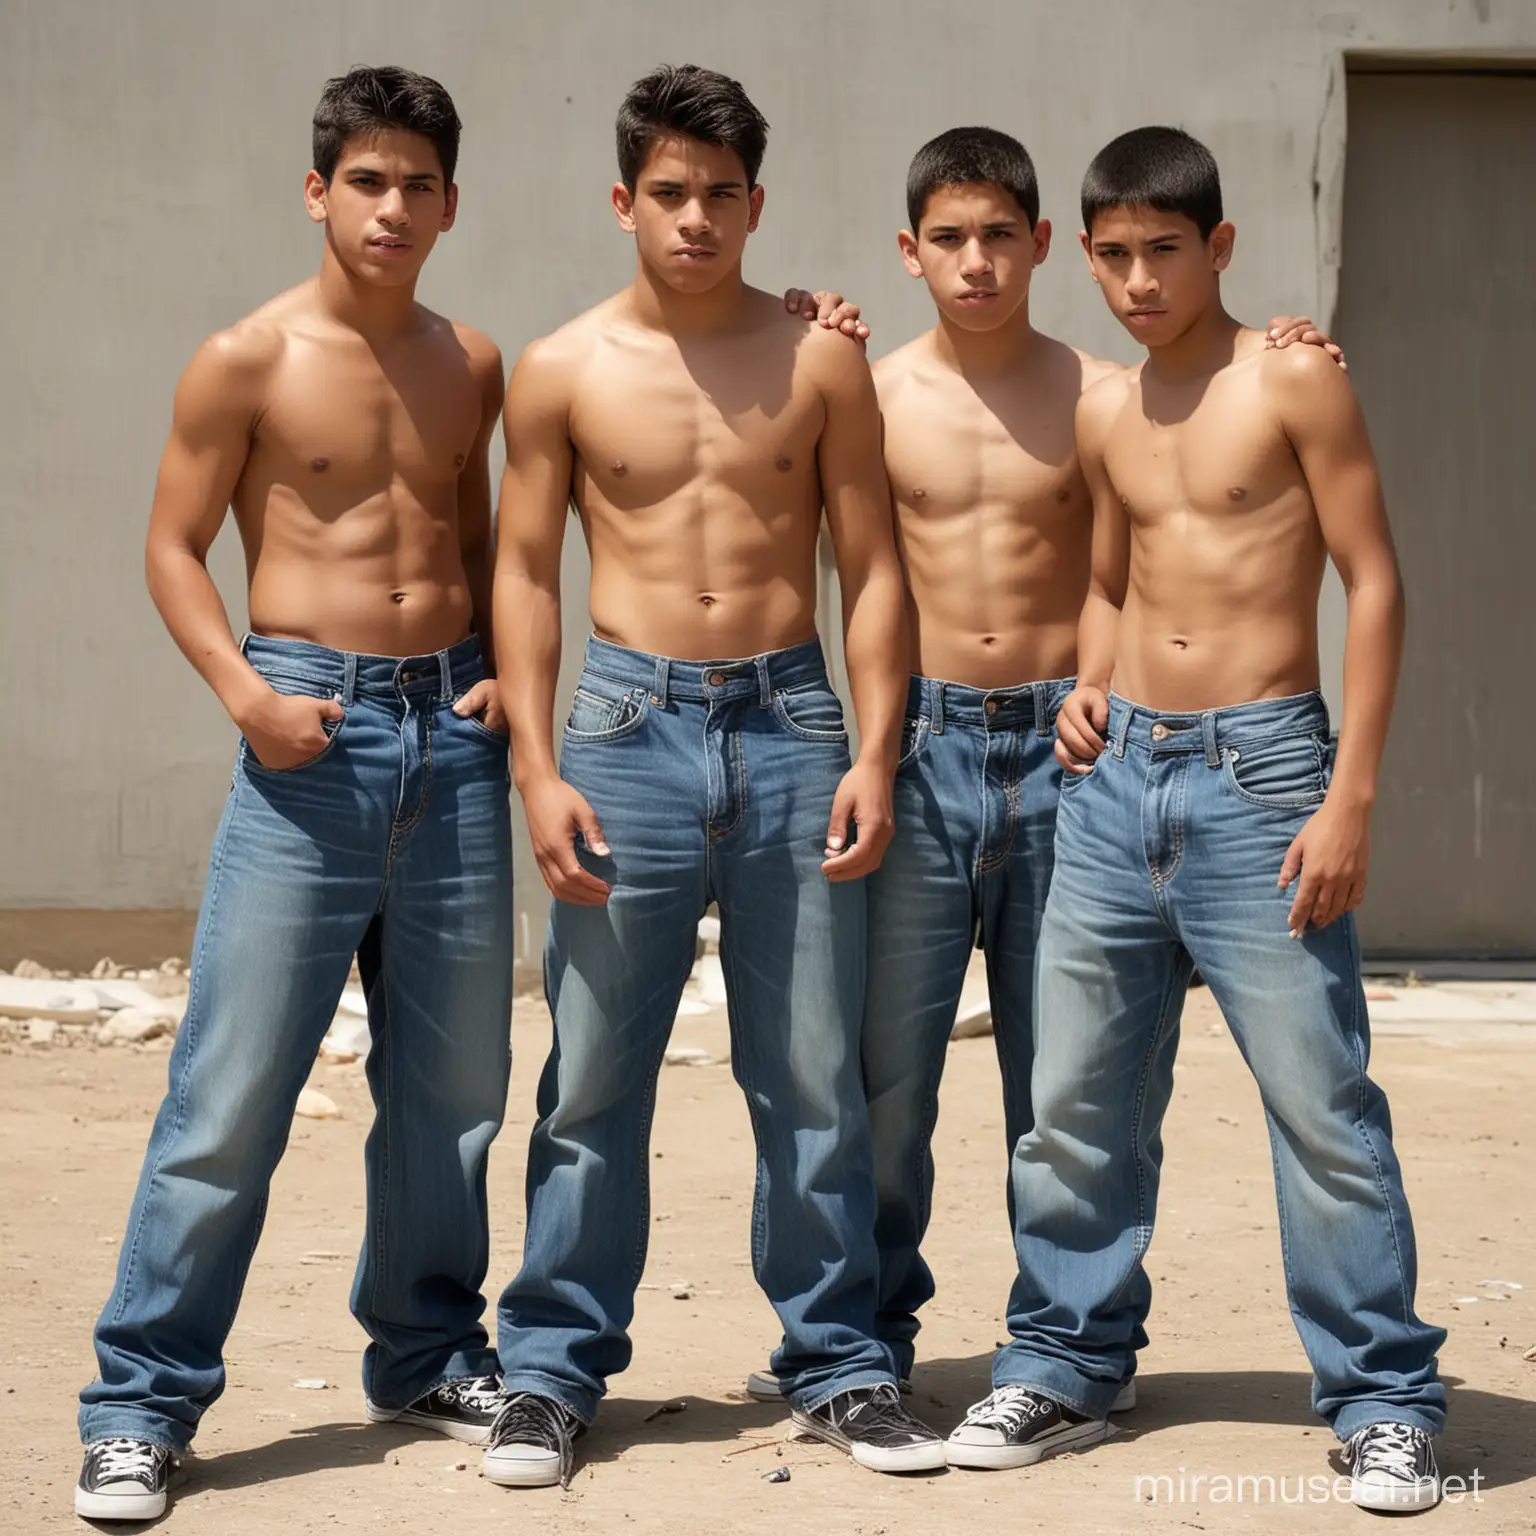 3 boys, hispanic, thugs, blue jeans, sagging, boxers visible, shirtless, gang 